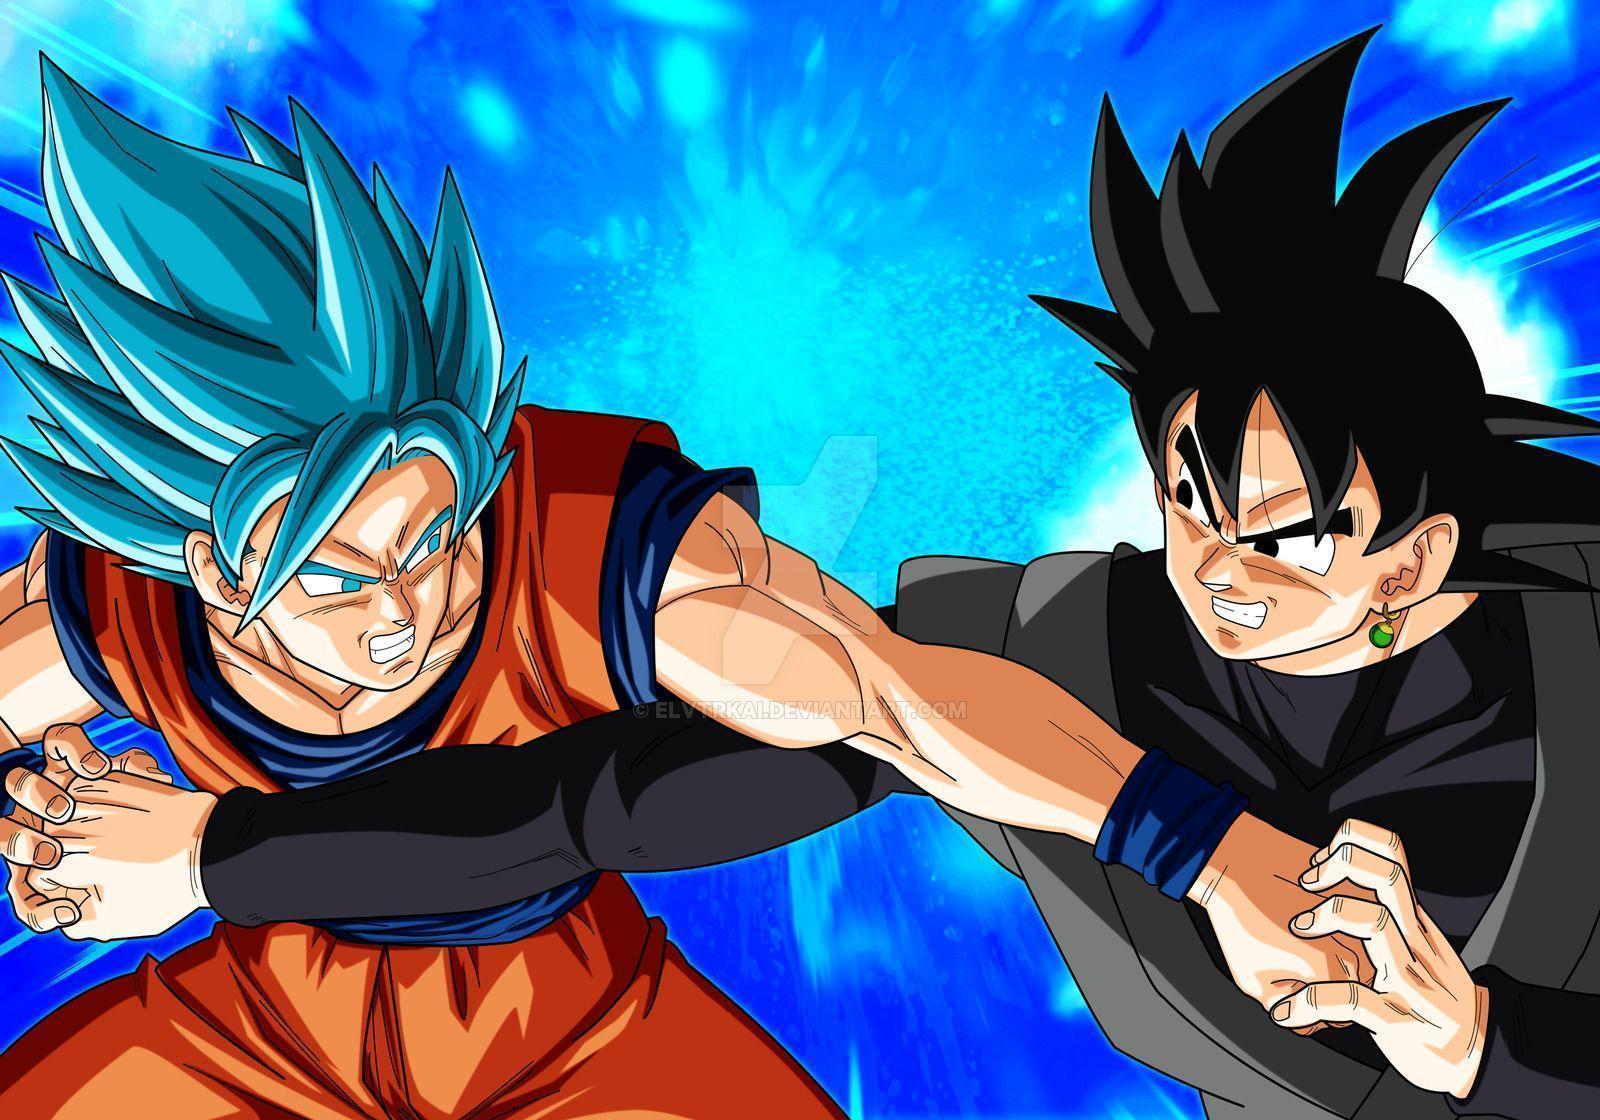 Black Goku vs Goku Wallpaper Free Black Goku vs Goku